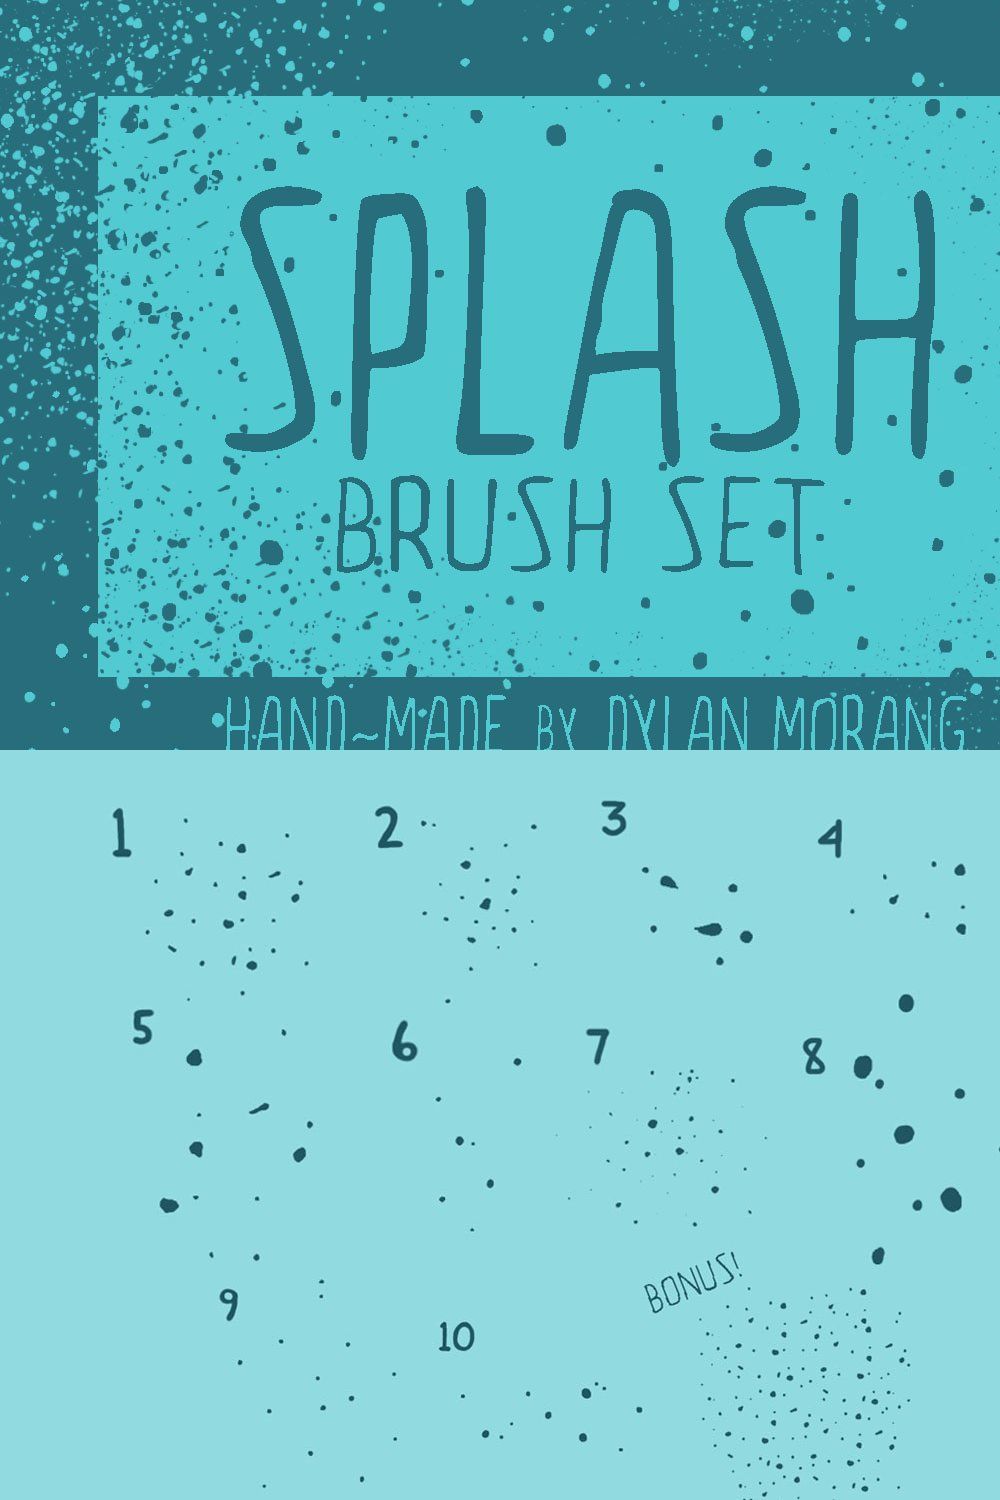 SPLASH brush set pinterest preview image.